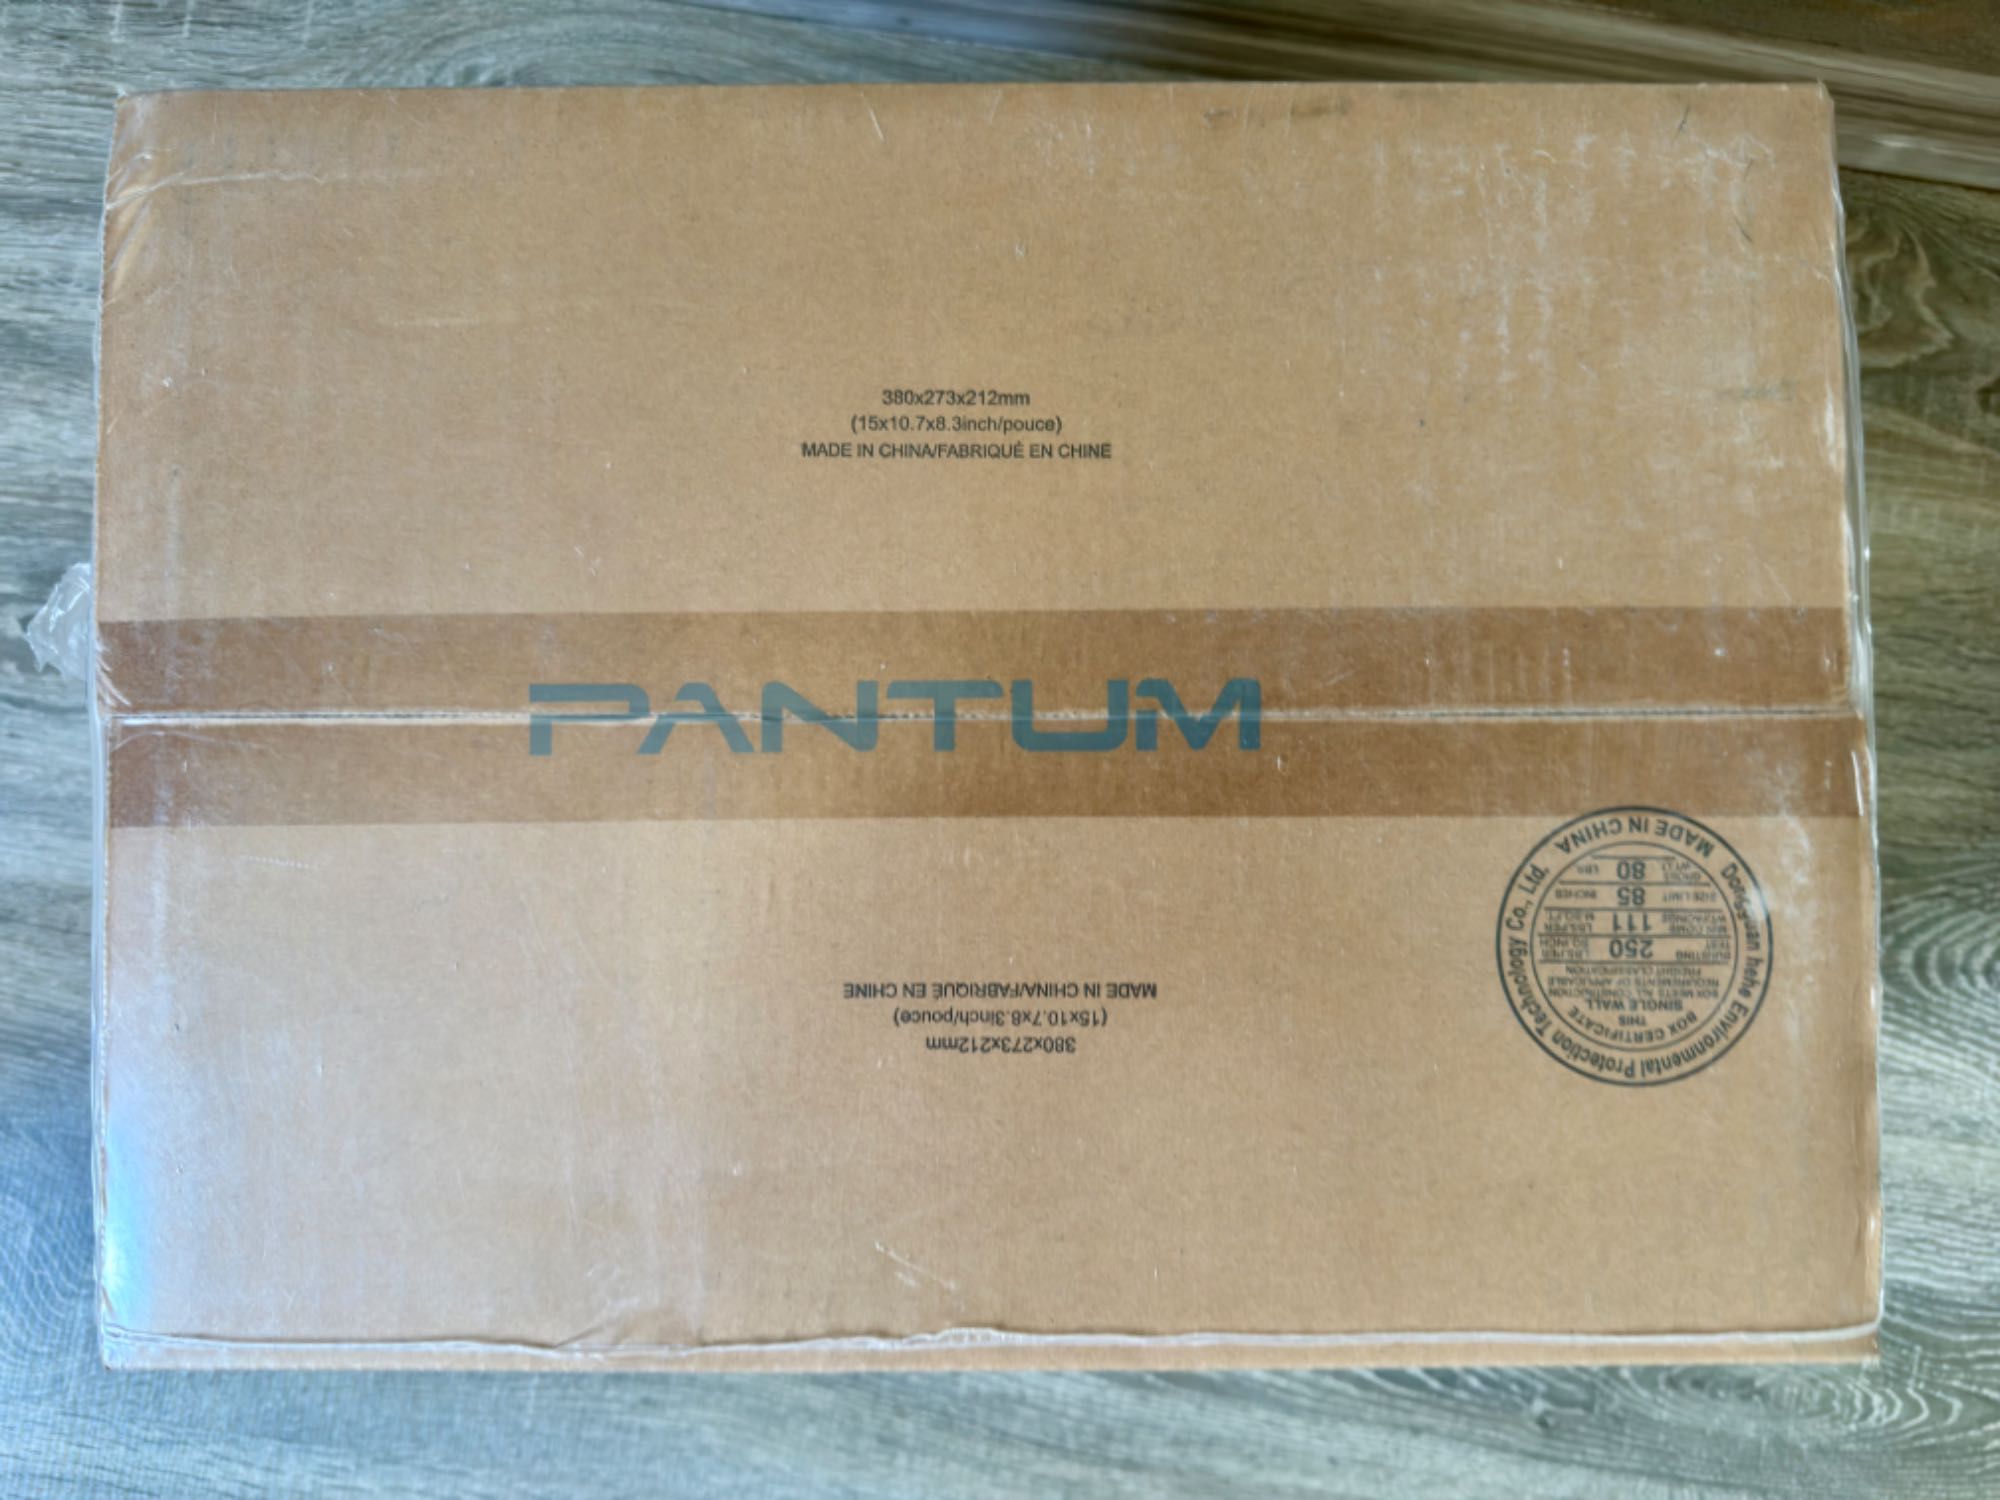 Imprimanta laser monocrom Pantum P2509W